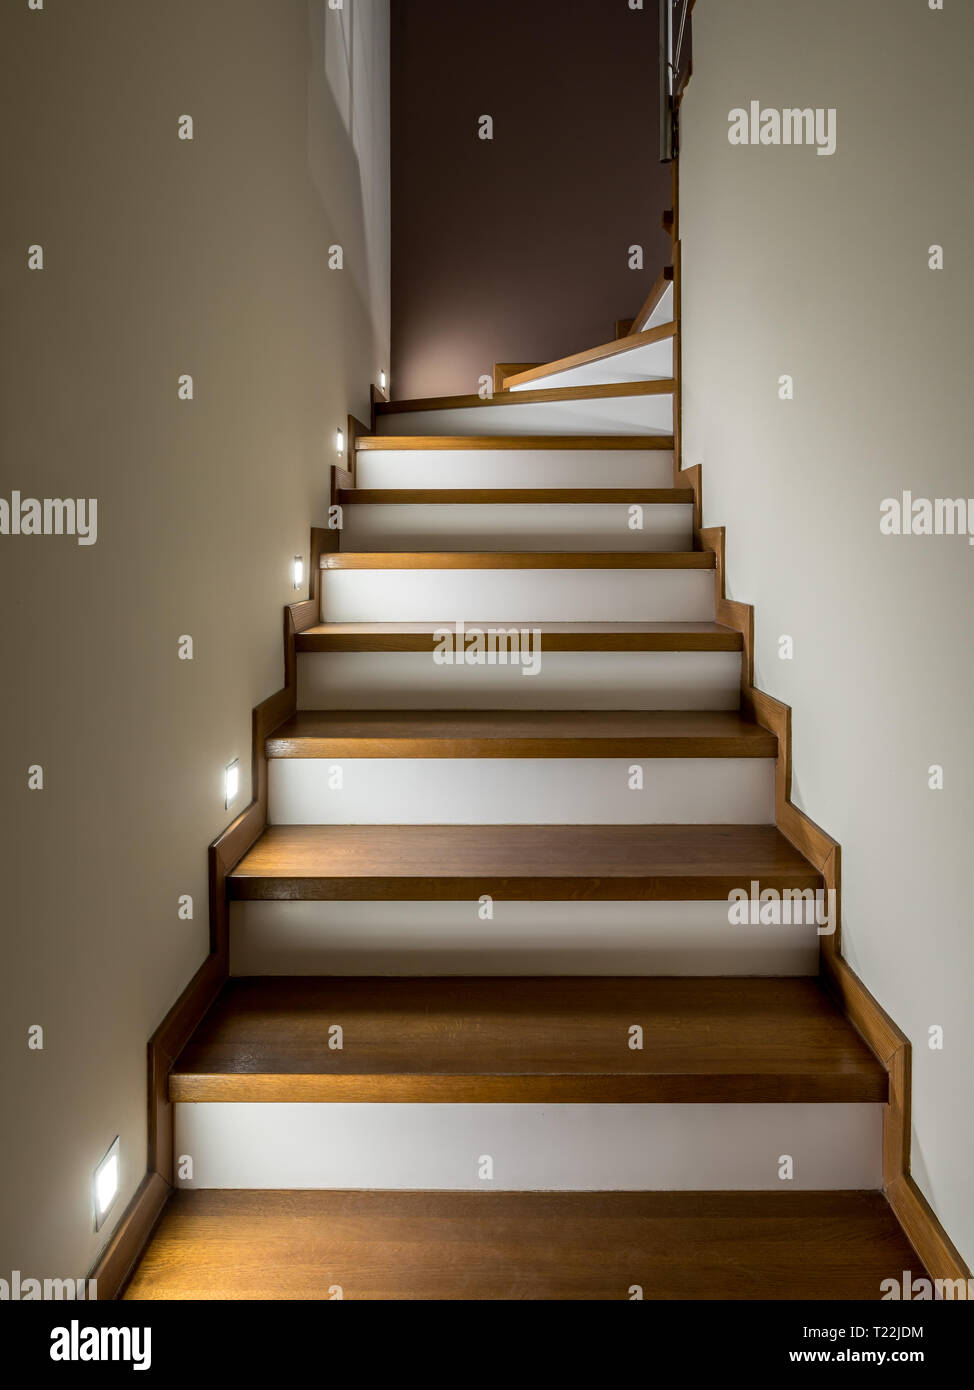 Beleuchtete Treppe mit Holzstufen und weißen Setzstufen - eine moderne Innenausstattung Stockfoto